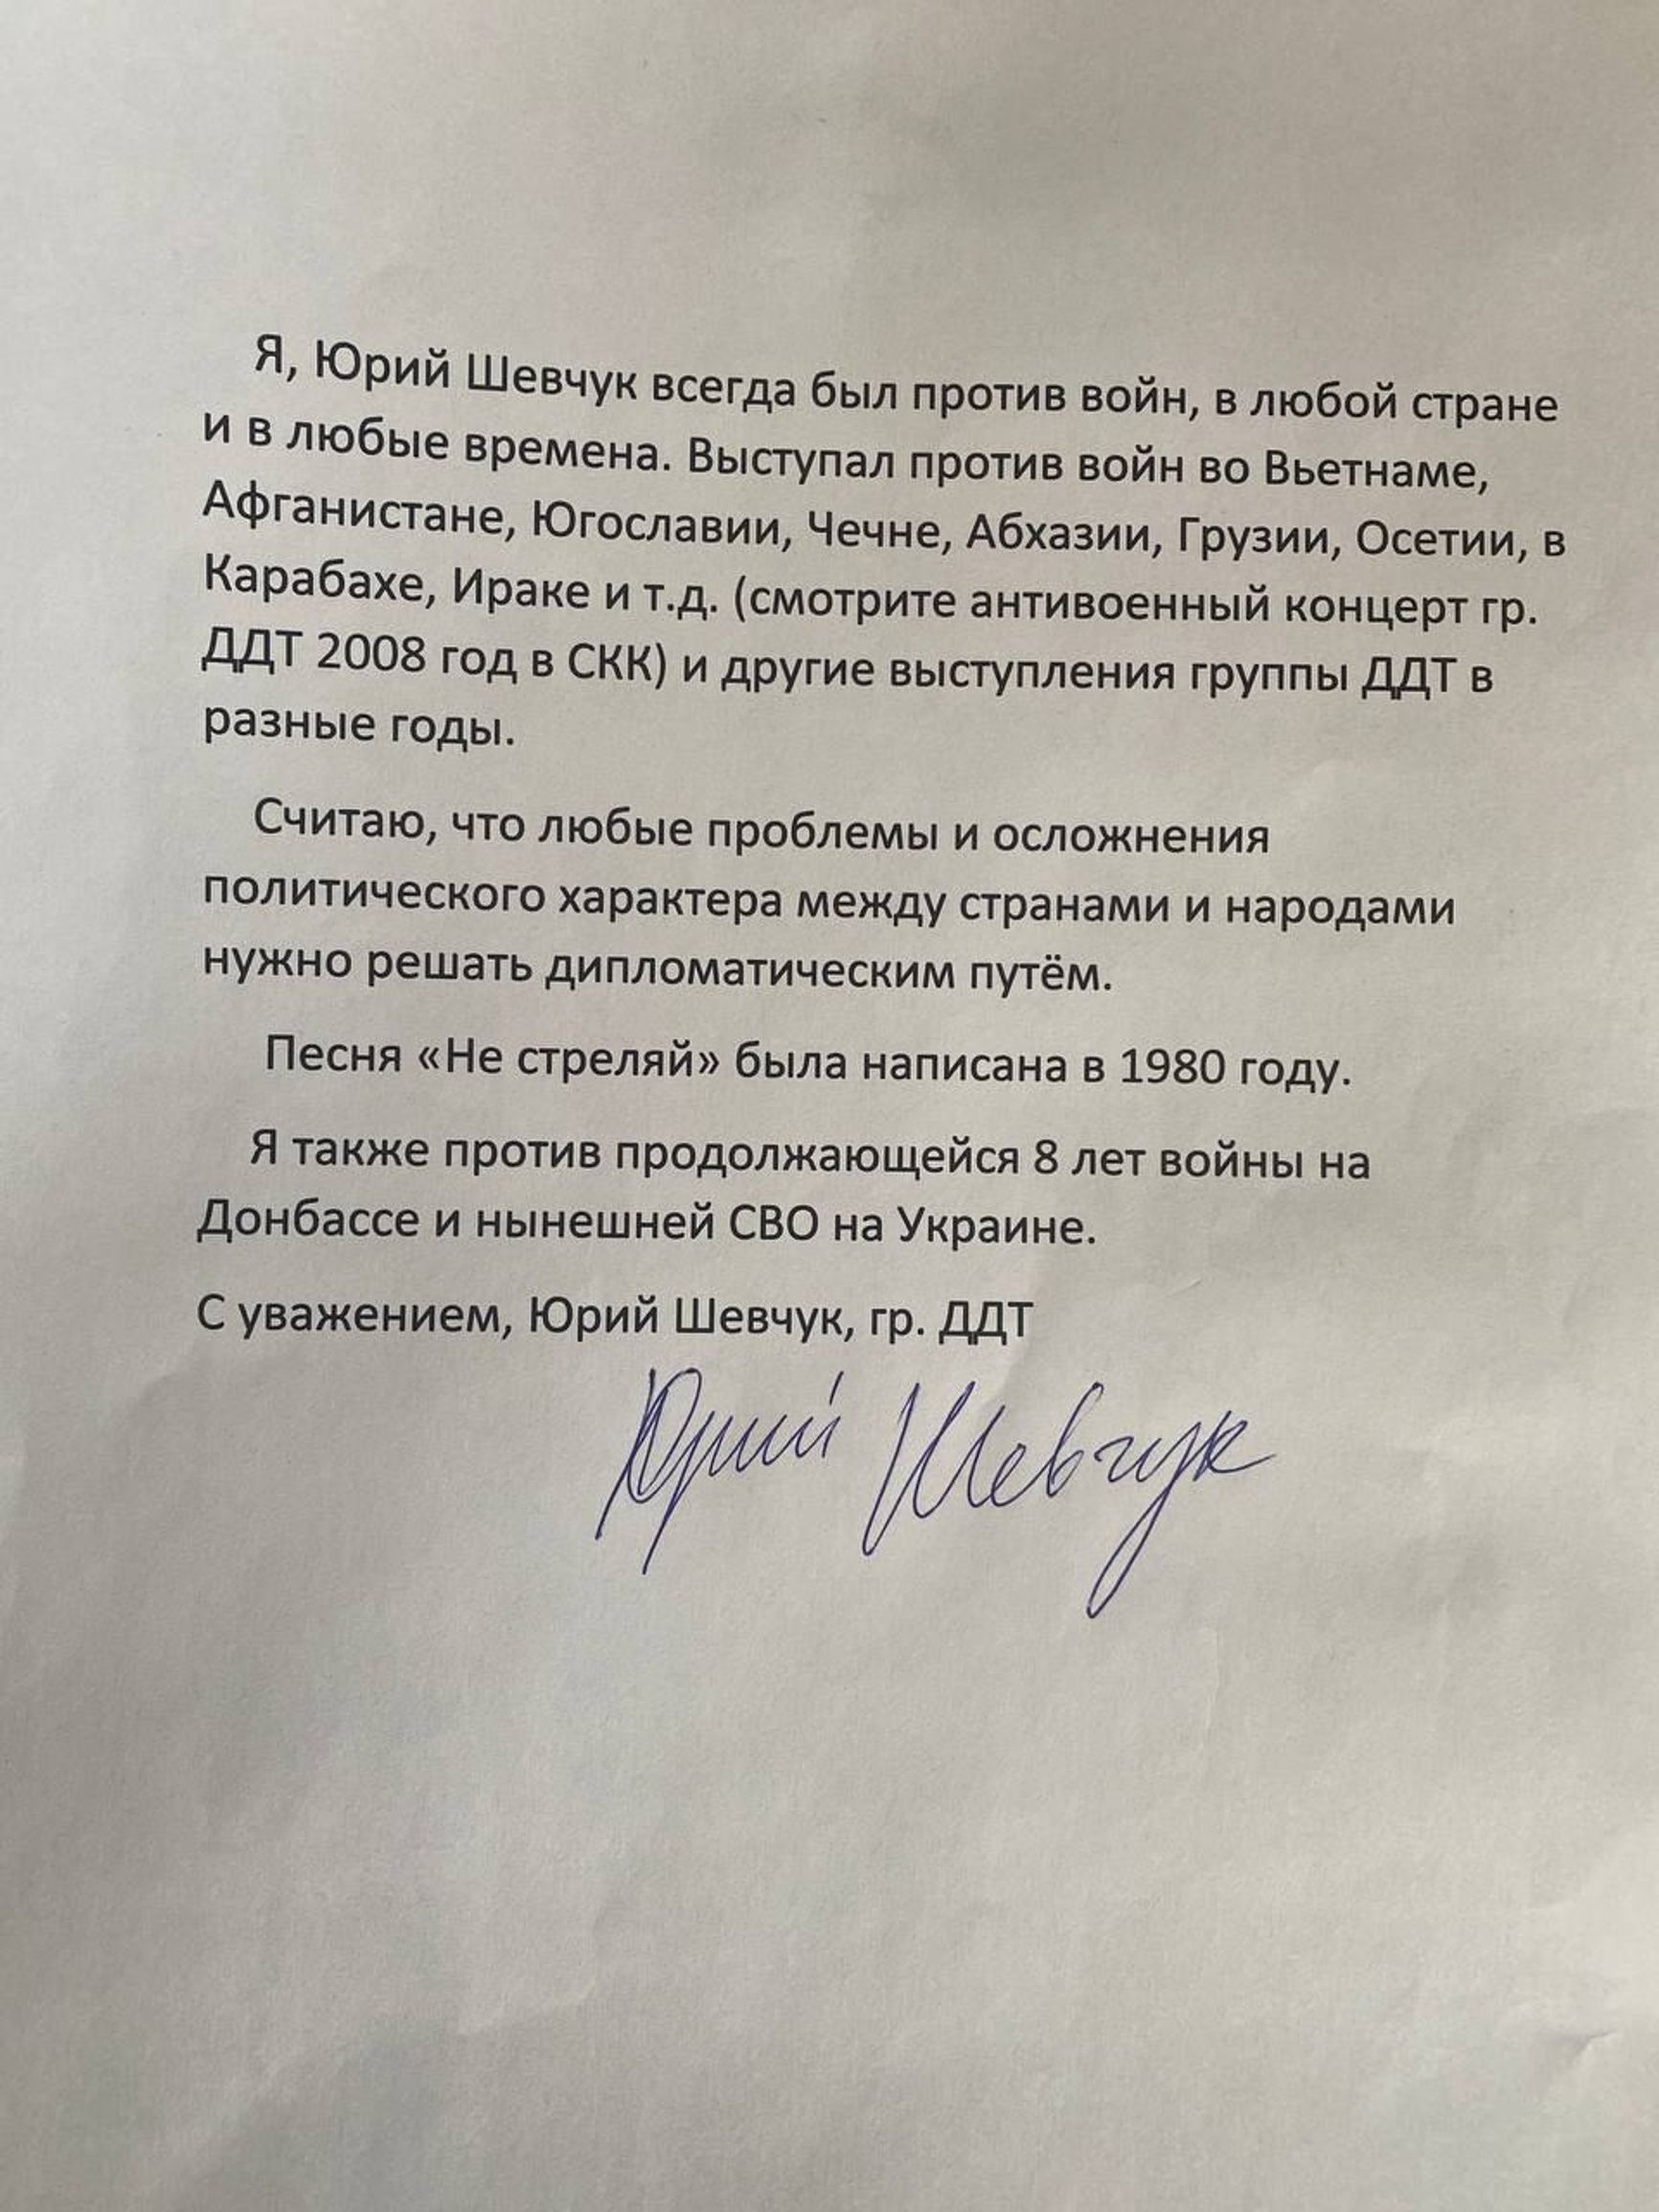 Шевчука оштрафовали на 50 тысяч рублей по делу о «дискредитации» армии